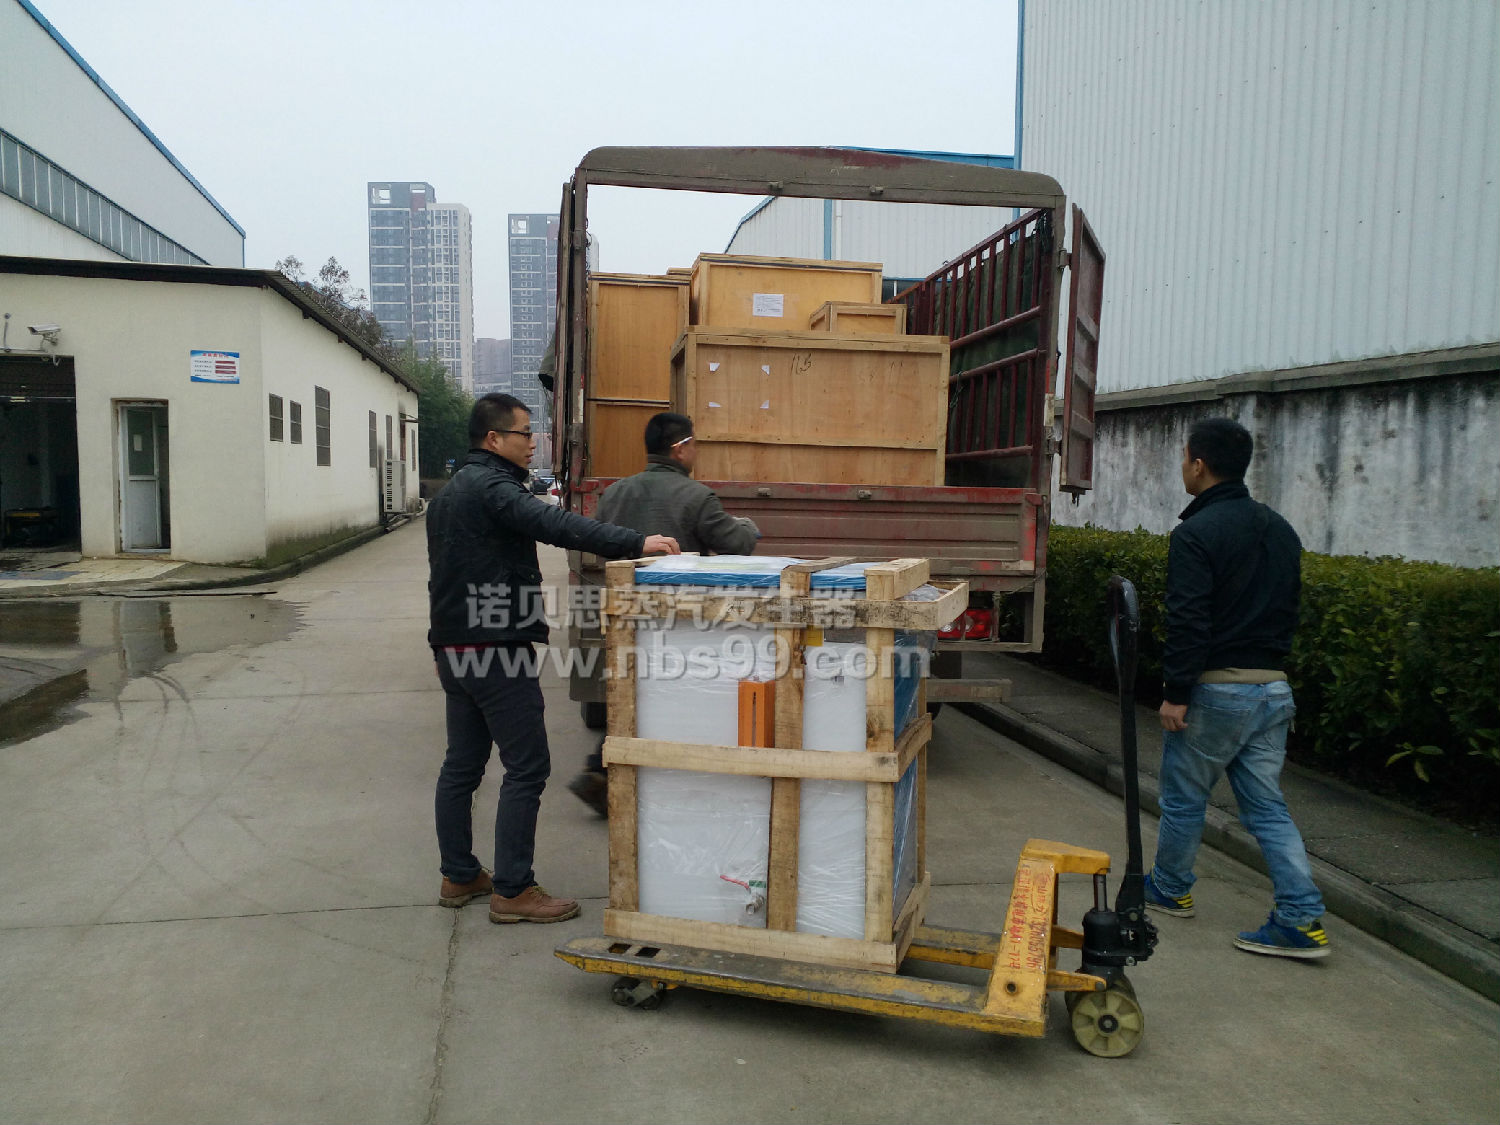 【北京】服装整烫蒸汽发生器帮助北京企业进行设备改造计划